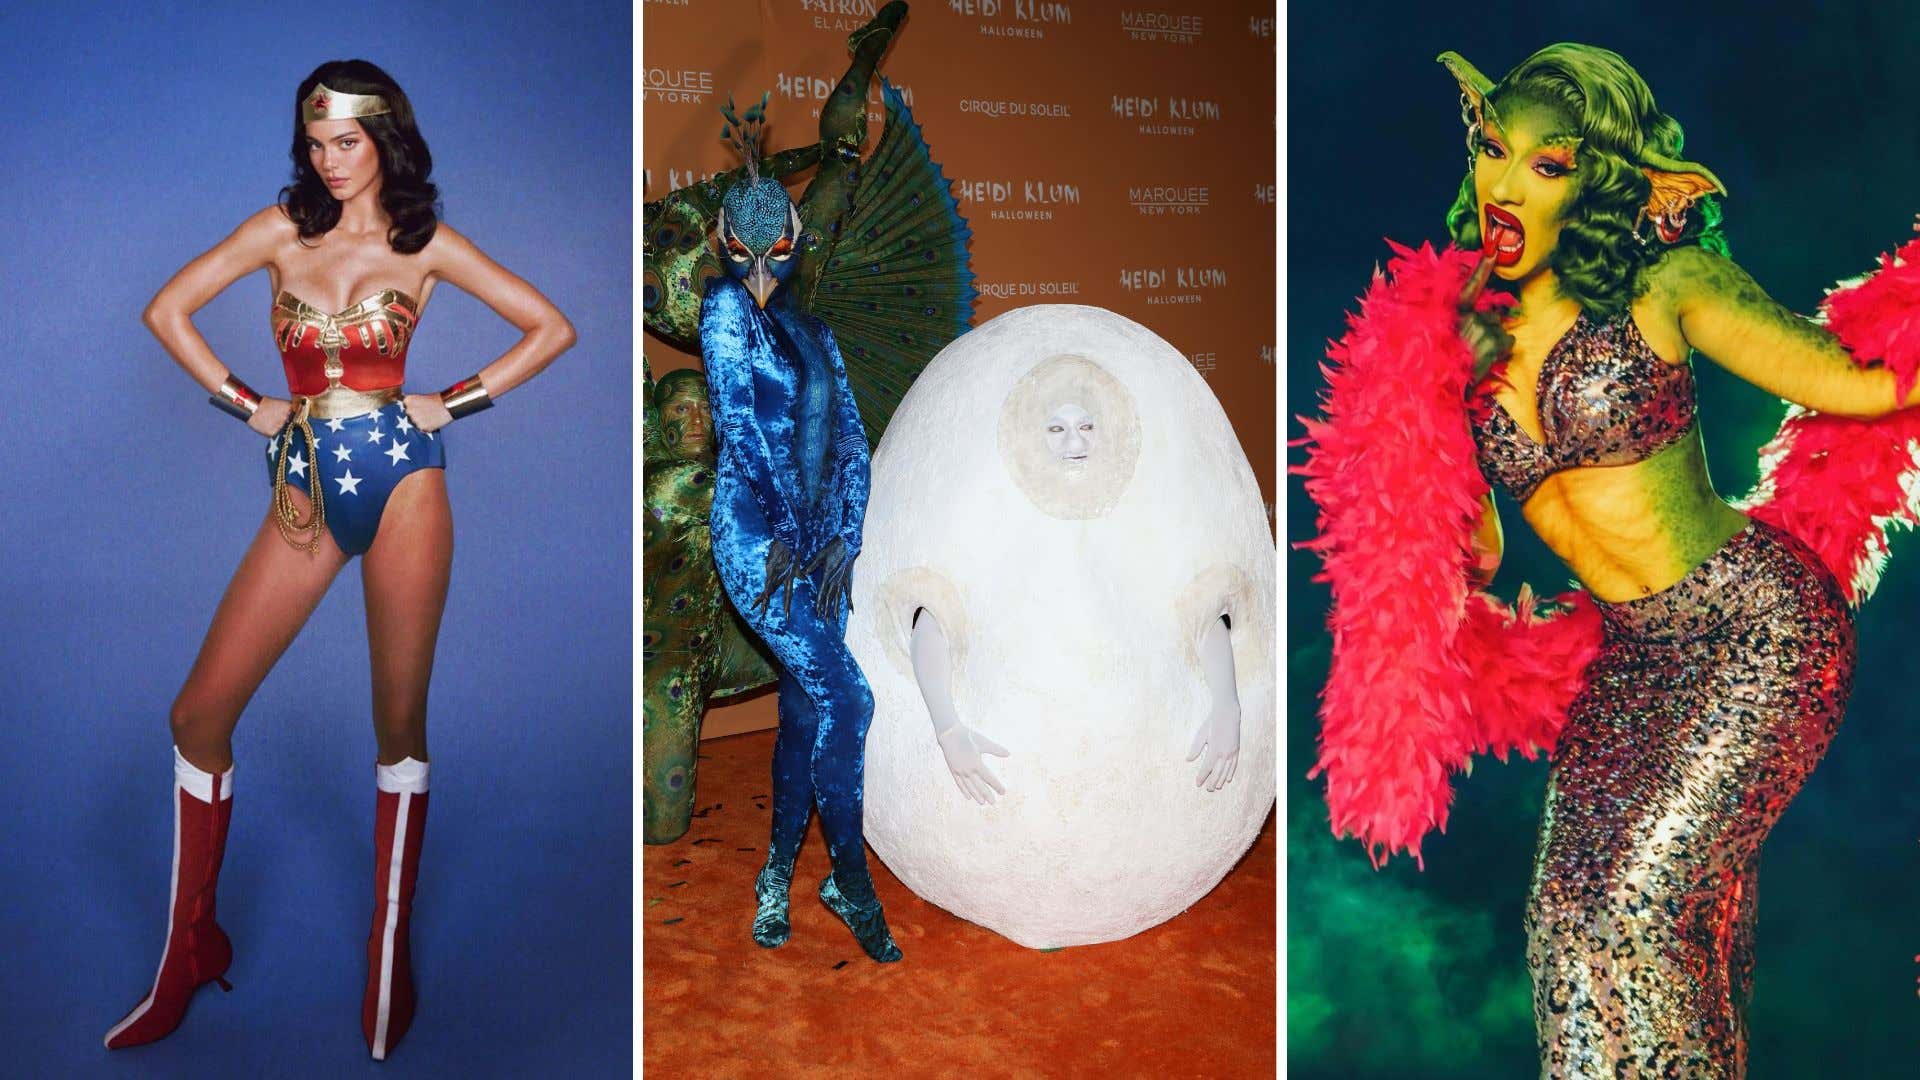 Bild für den Artikel mit dem Titel „Die aufwendigsten – und verwirrendsten“ Promi-Halloween-Kostüme des Jahres